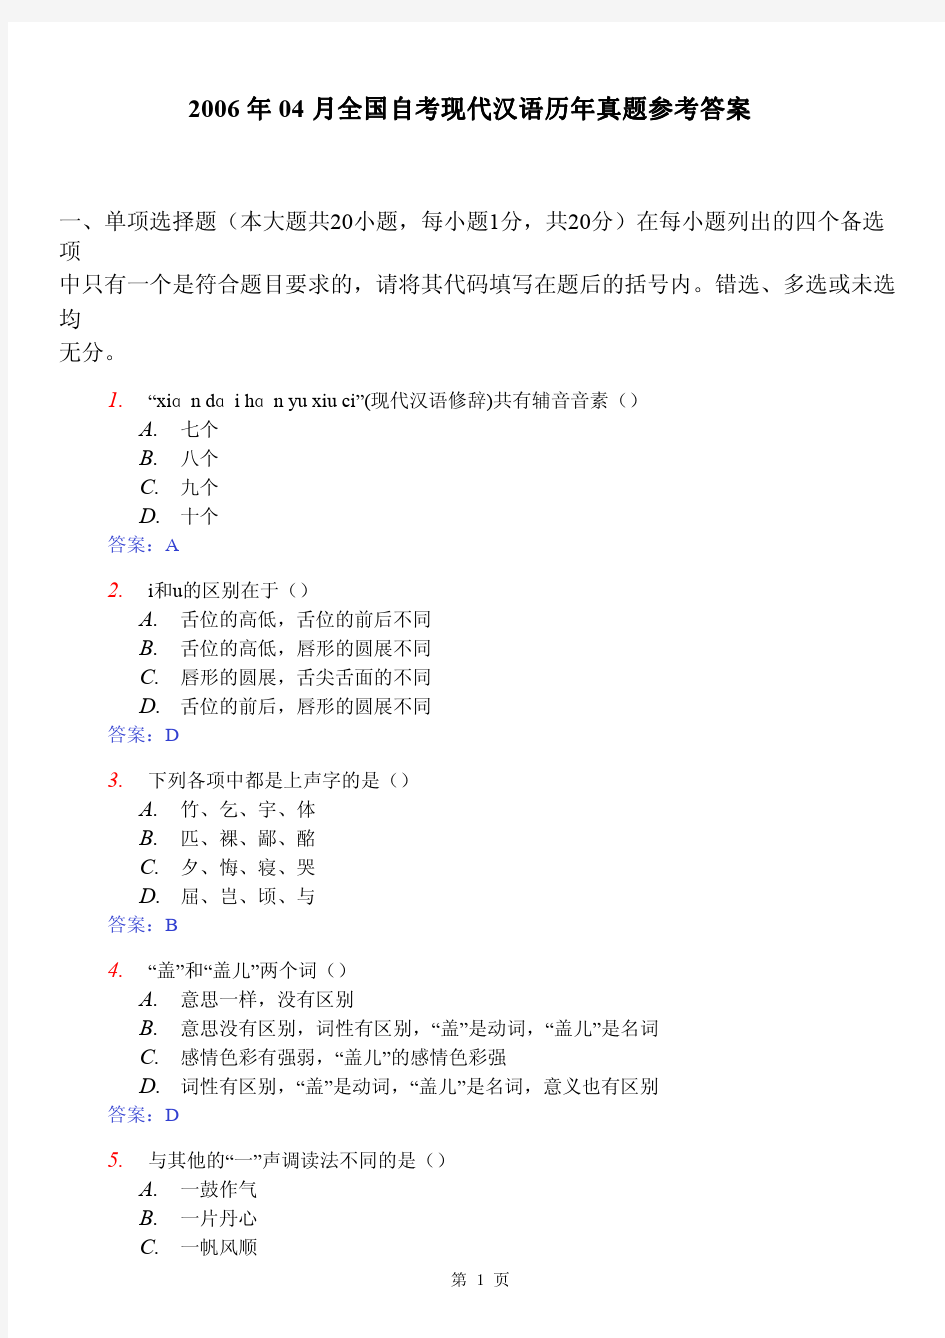 2006年4月自考试题现代汉语答案